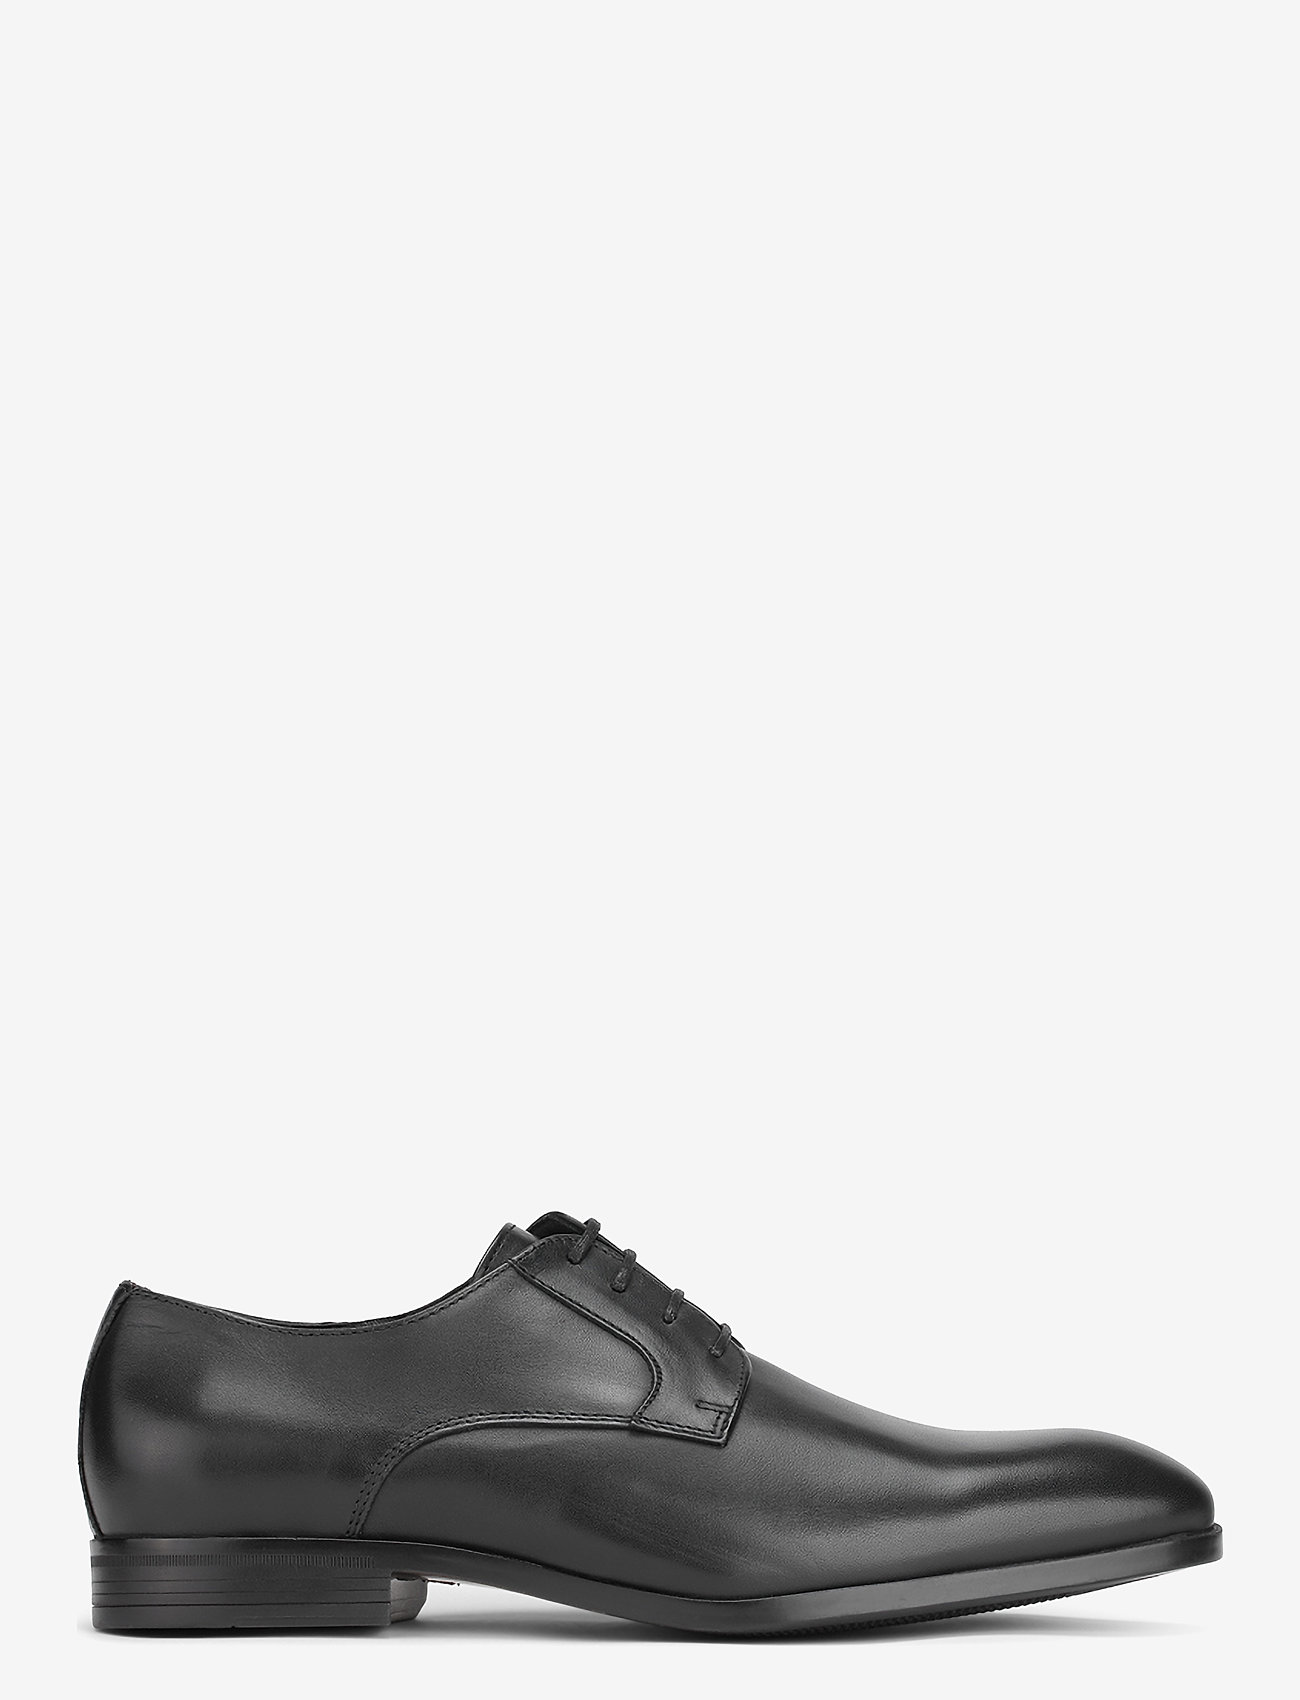 Playboy Footwear - PB10048 - snøresko - black leather - 1